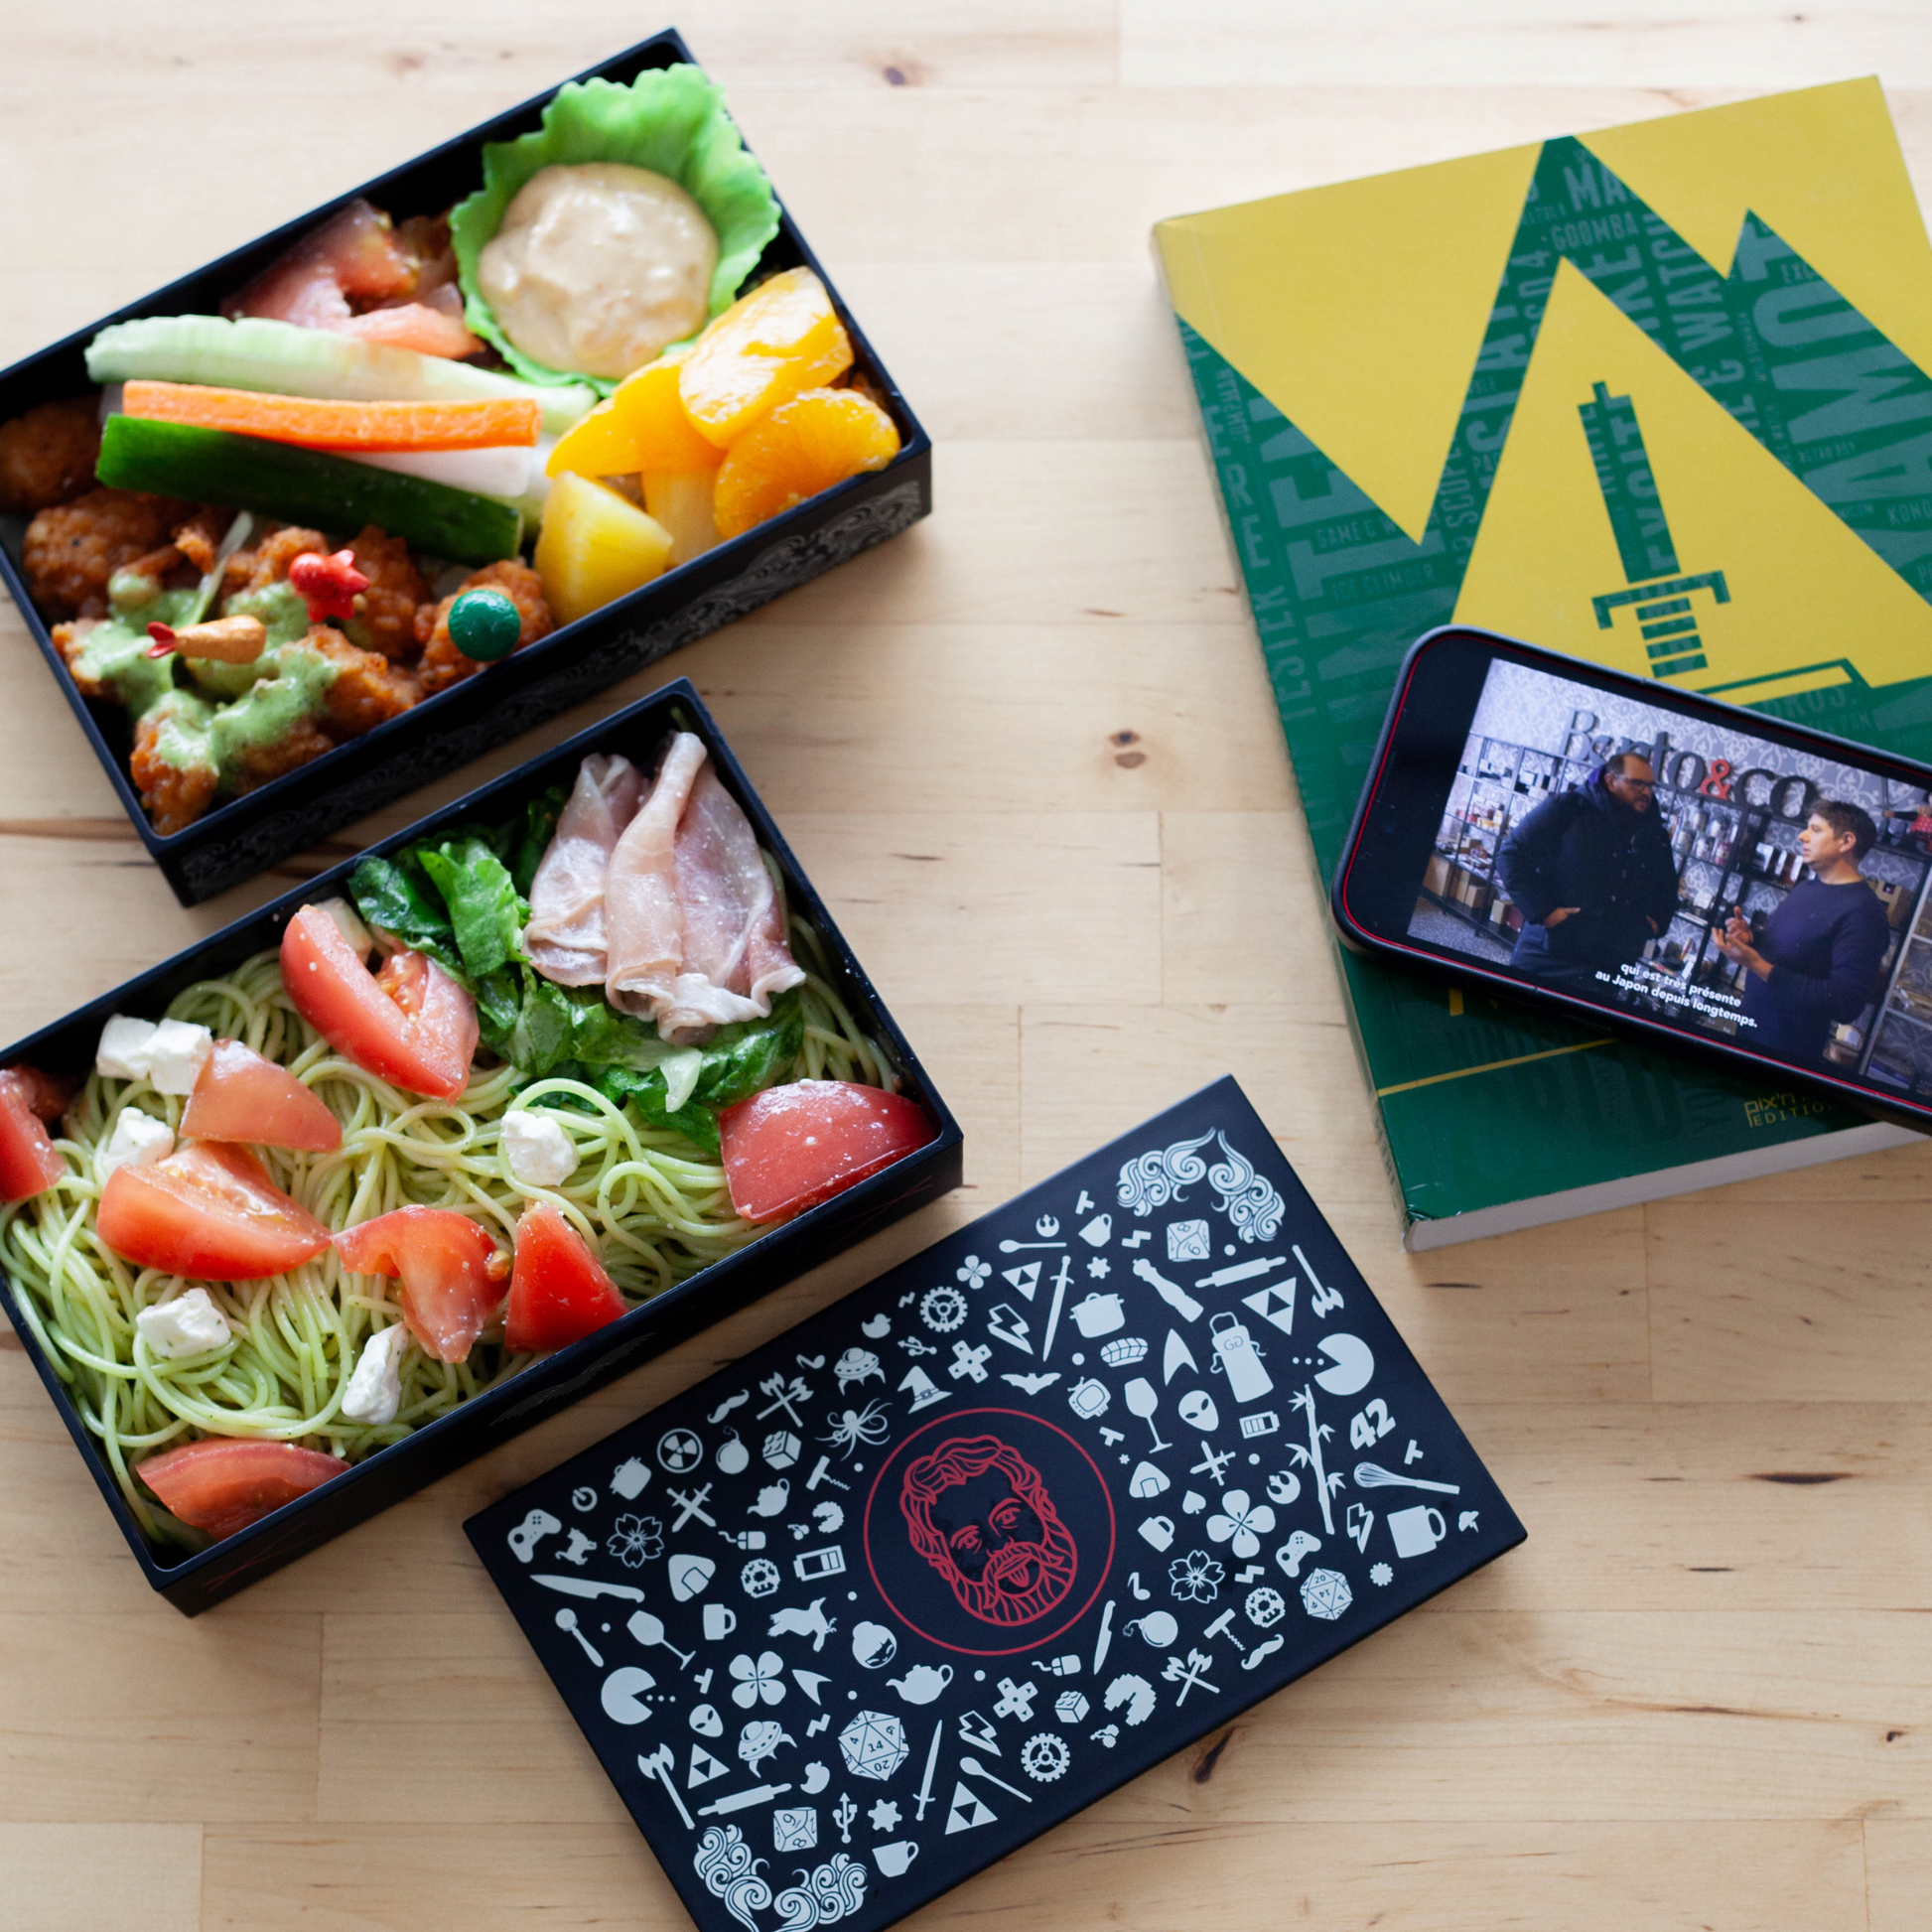 Appareil à sushi — Ma lunchbox shop